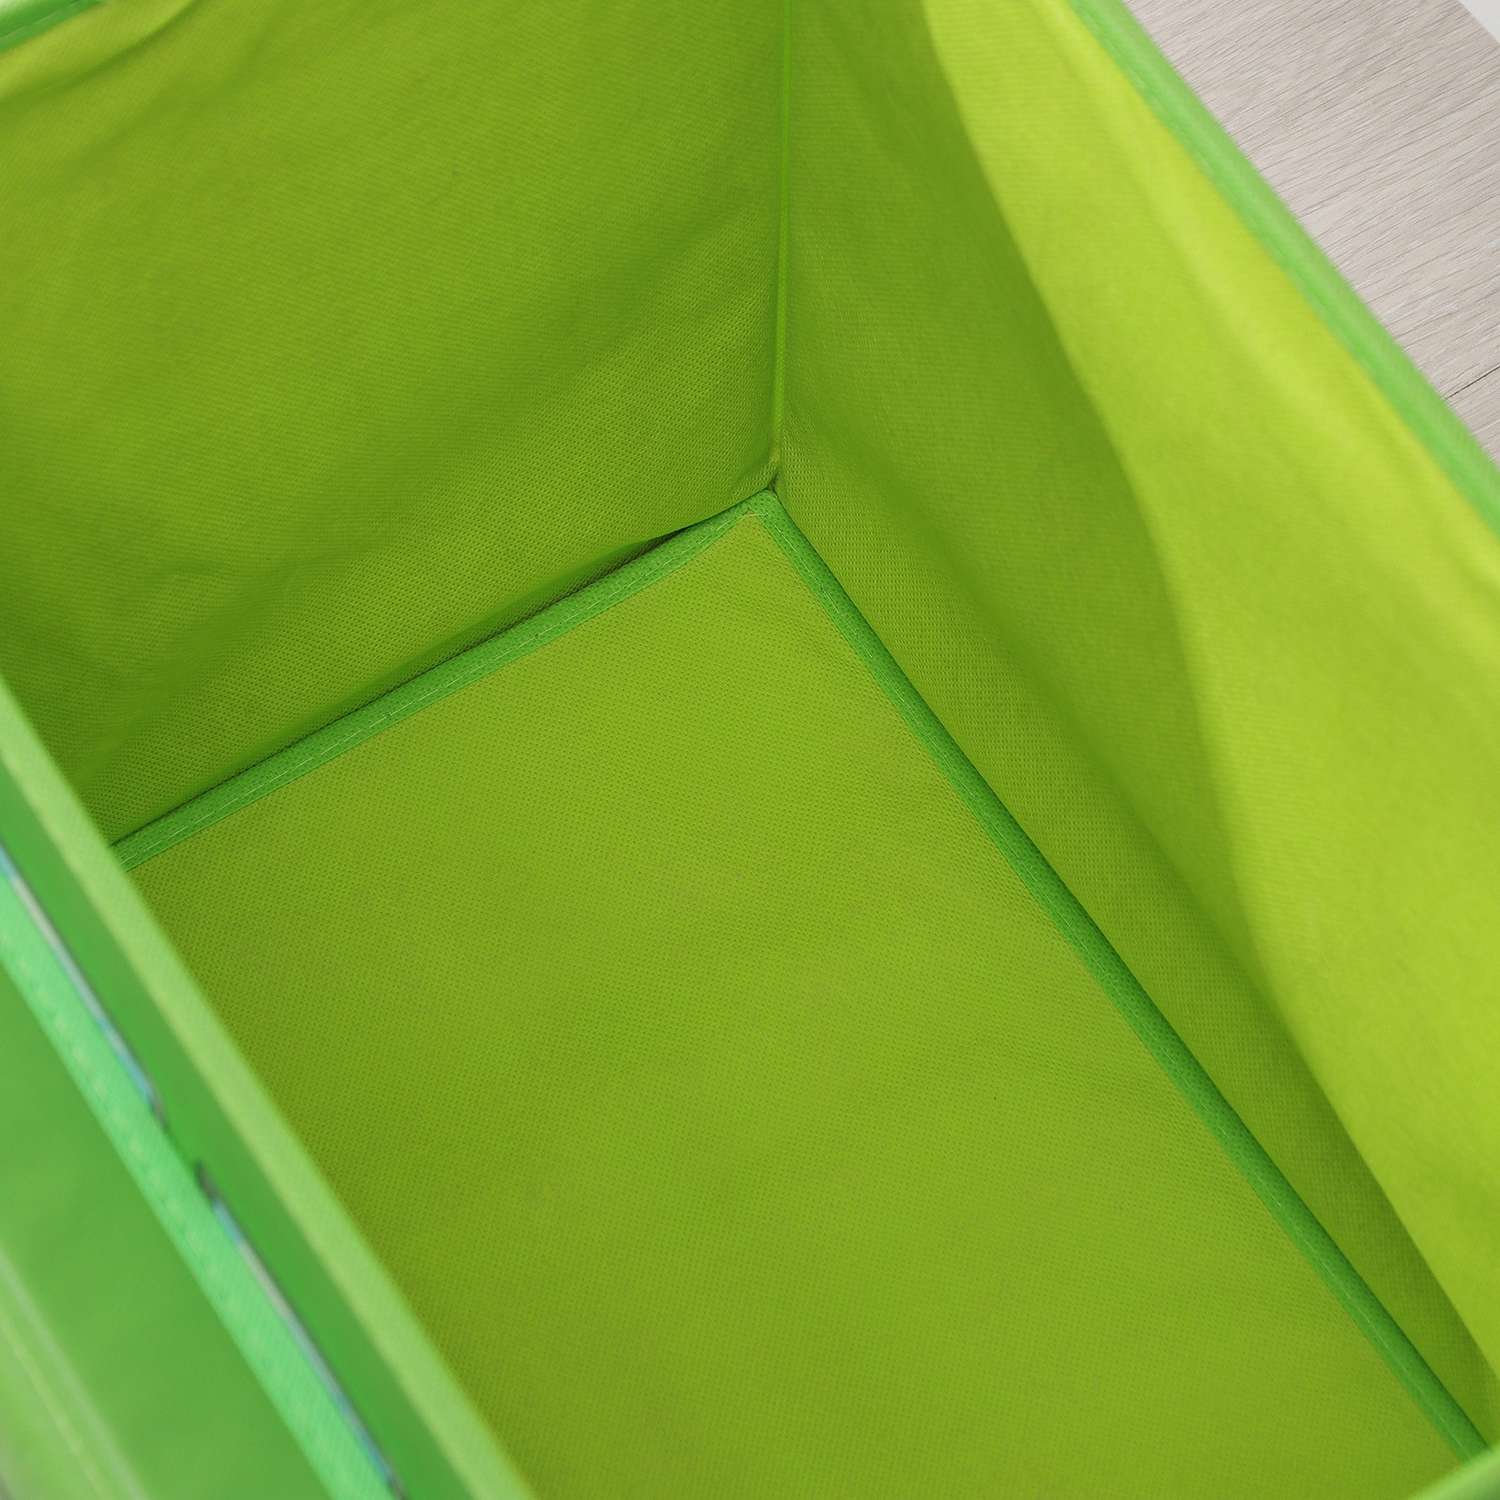 Короб Школа Талантов стеллажный для хранения с крышкой «Школьный автобус» 55×26×32 см 2 отделения цвет зелёный - фото 5